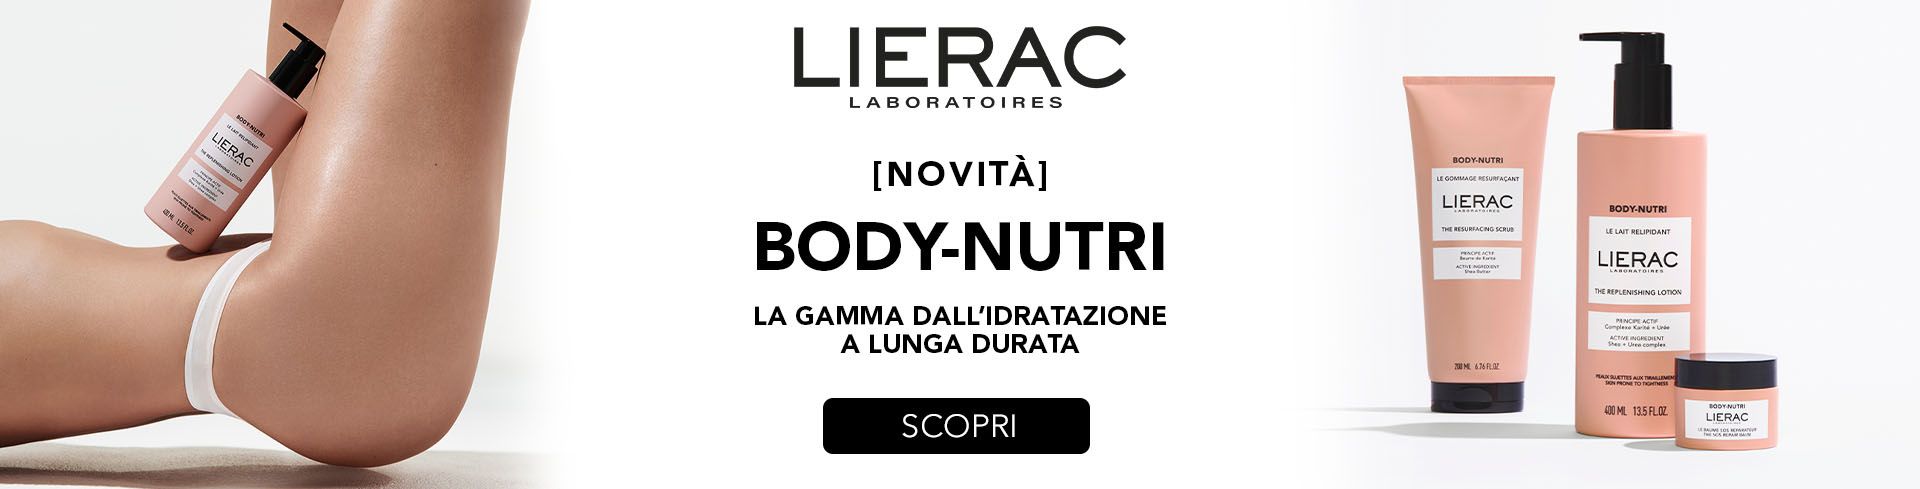 Scopri la linea Lierac Body-Nutri, la gamma dall'idratazione a lunga durata